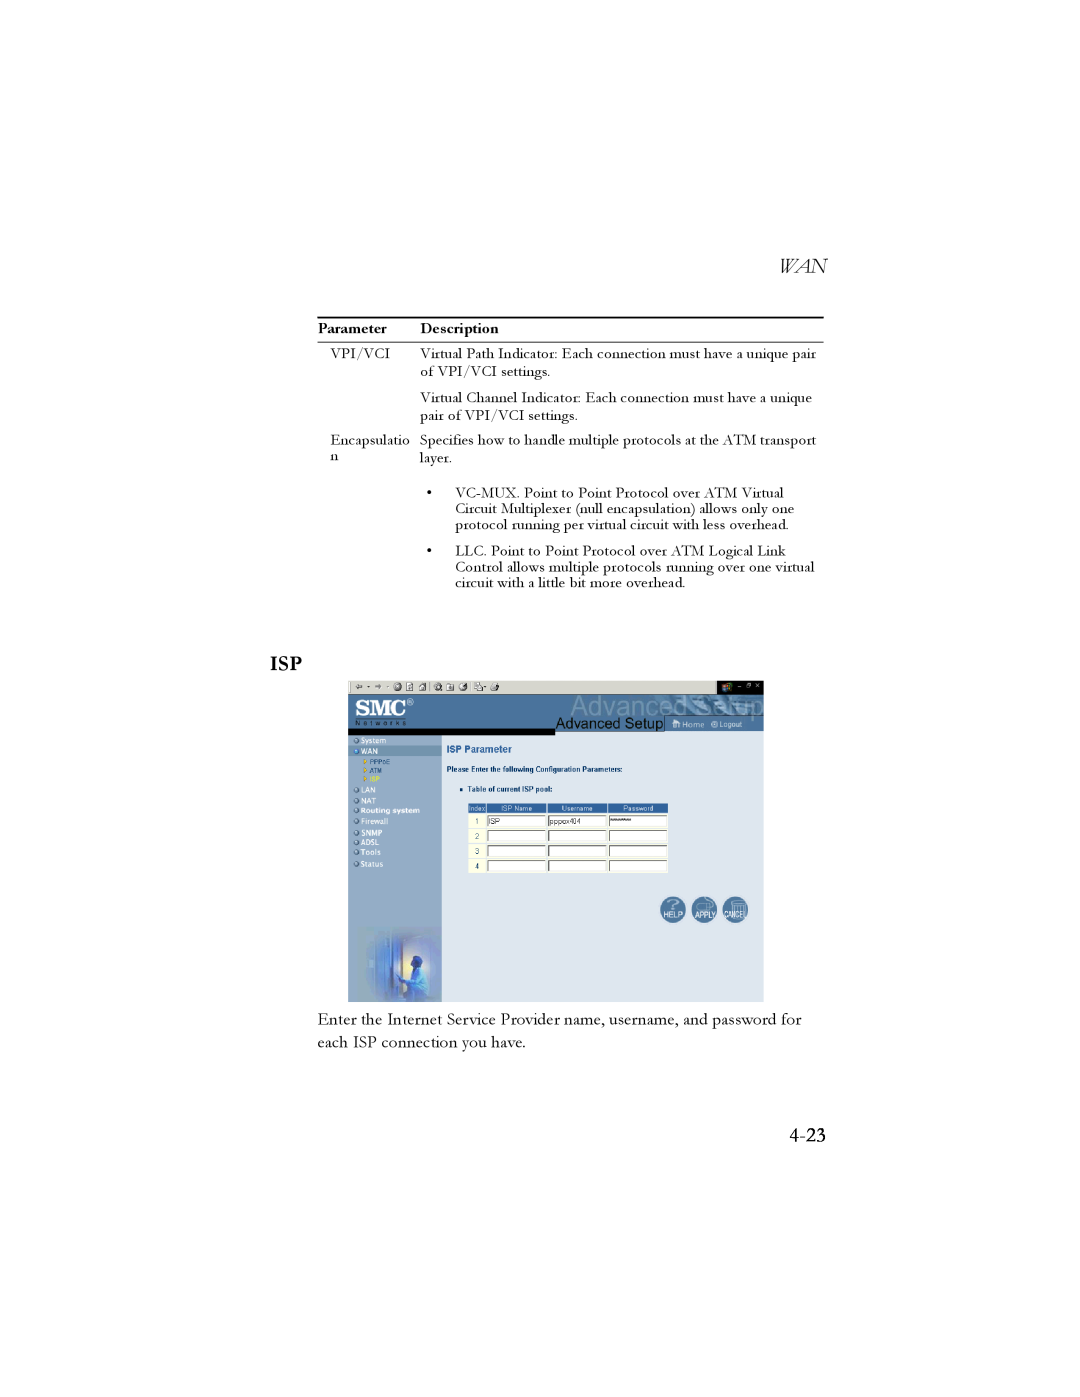 SMC Networks SMC7404BRA EU manual 4-23, Parameter, Description 